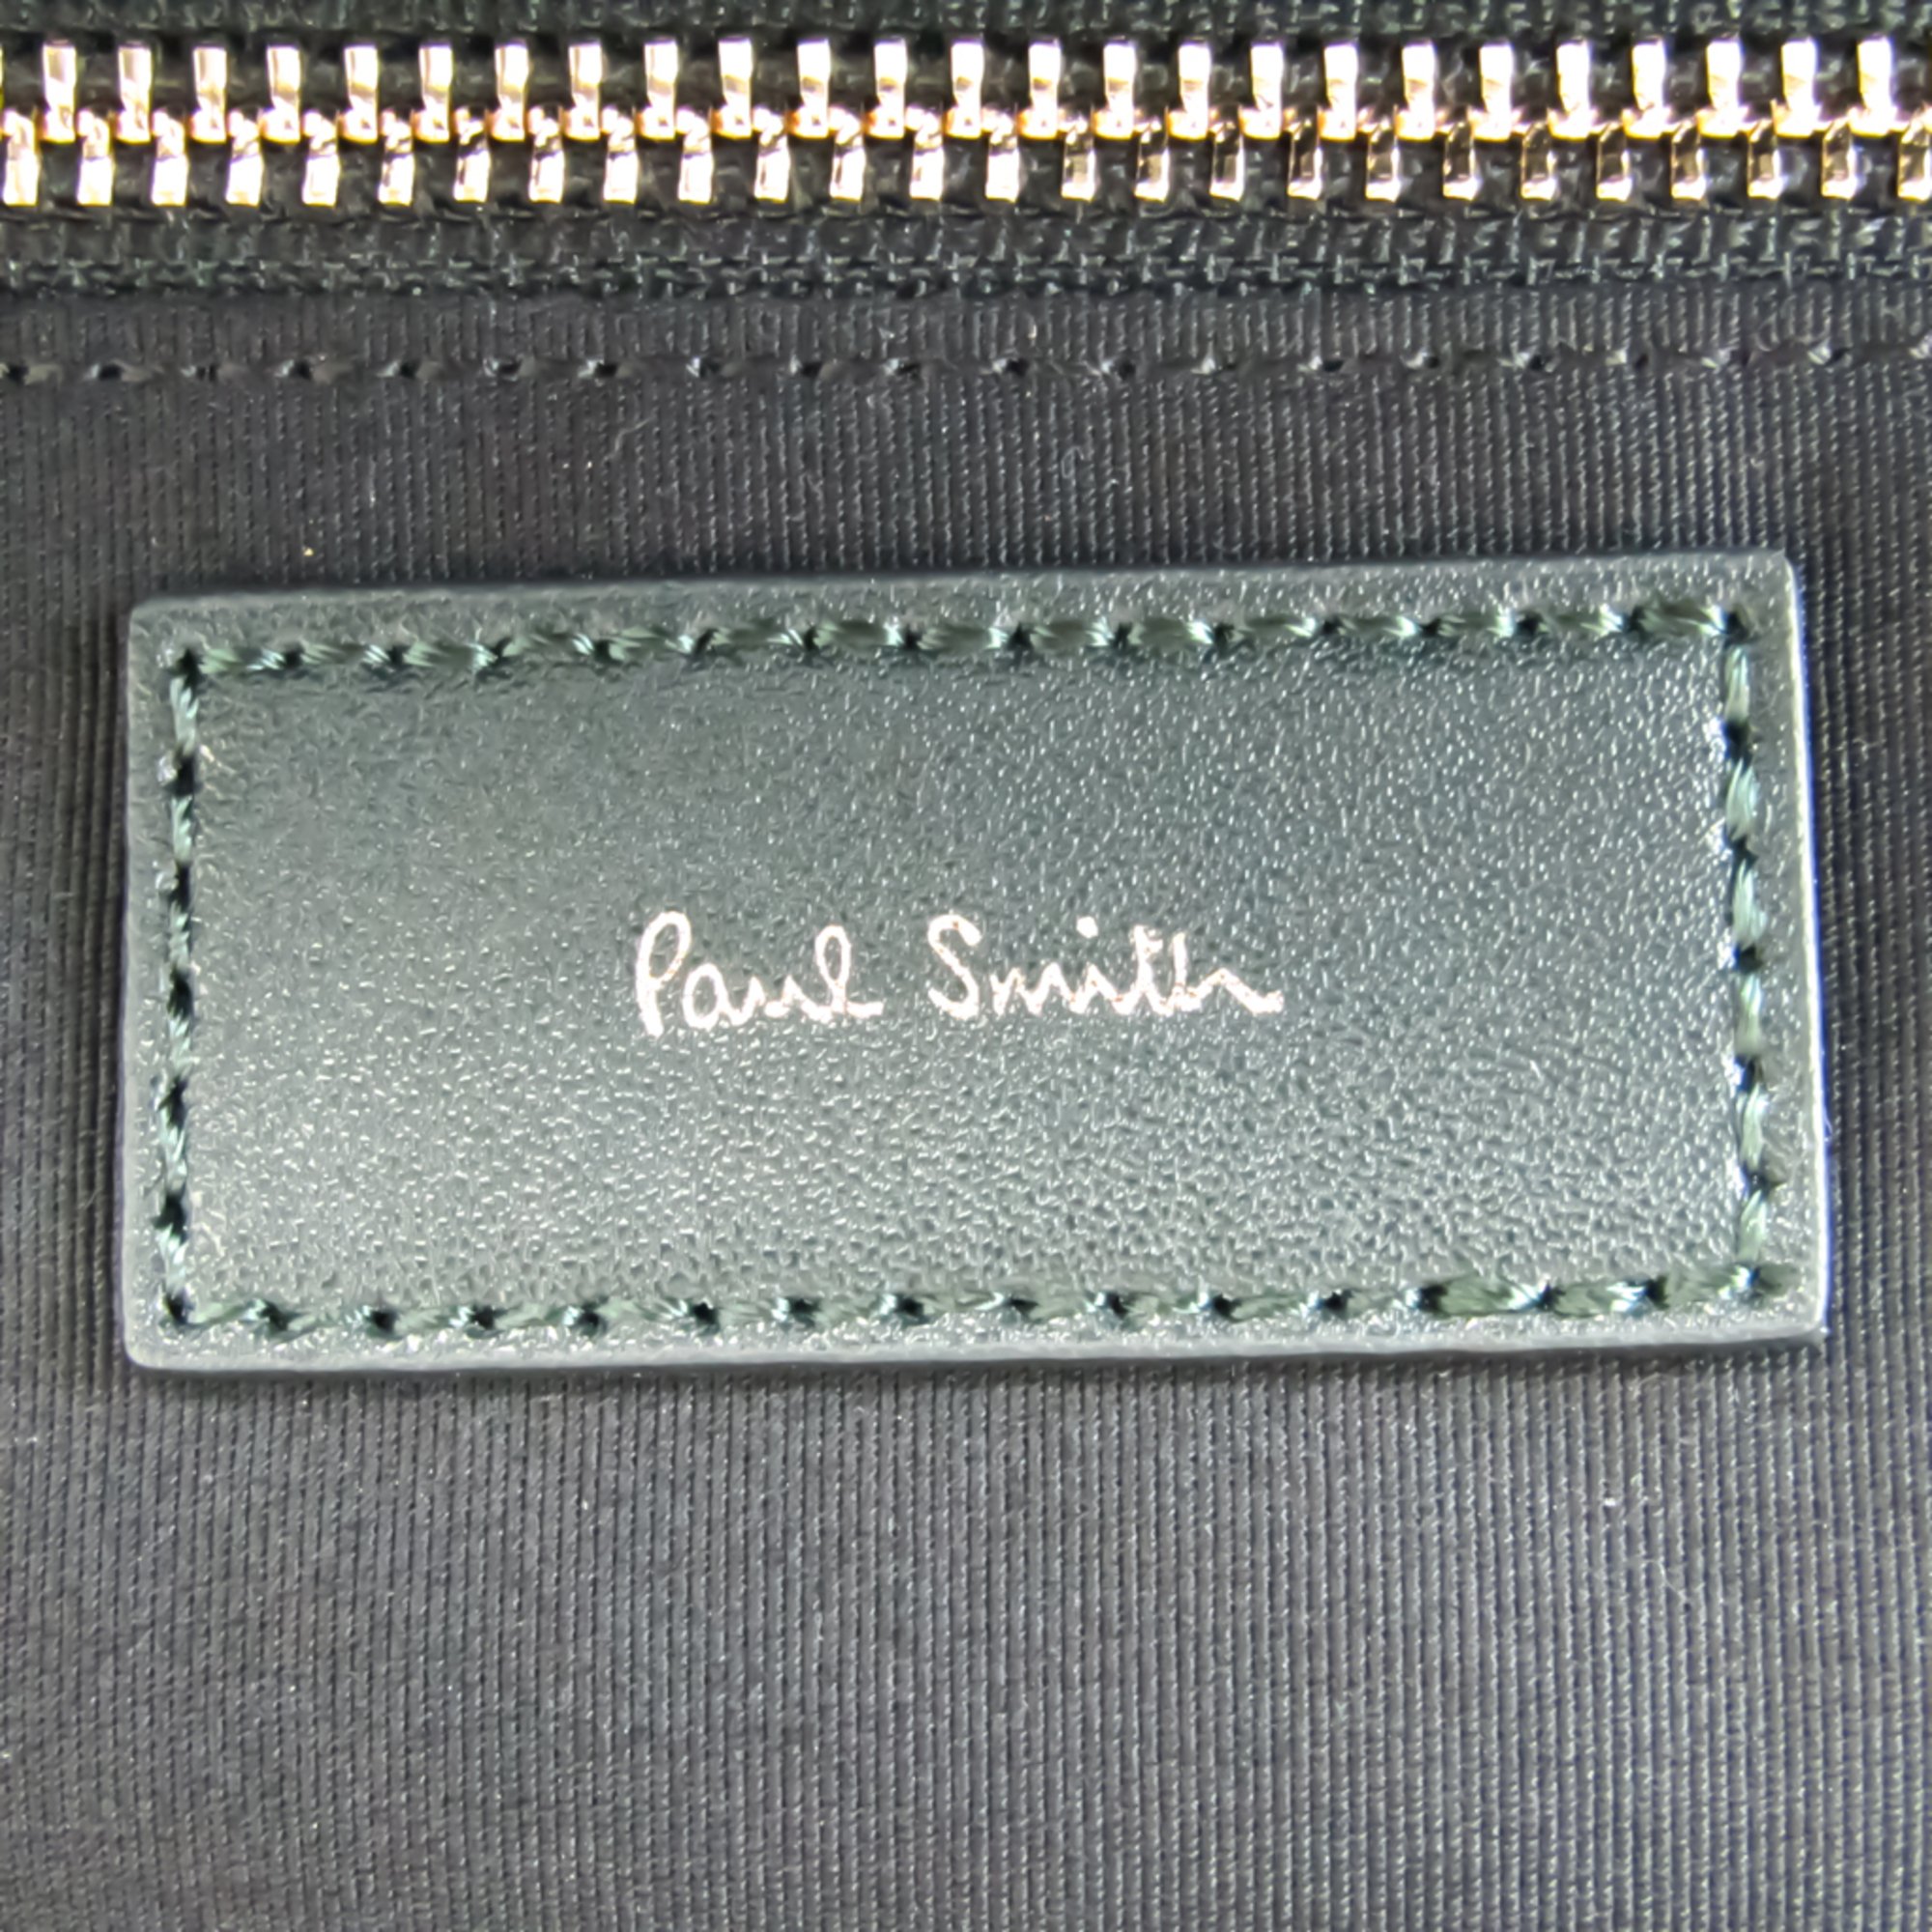 Paul Smith Needle Check Backpack Unisex Acrylic,Wool Backpack Gray,Green